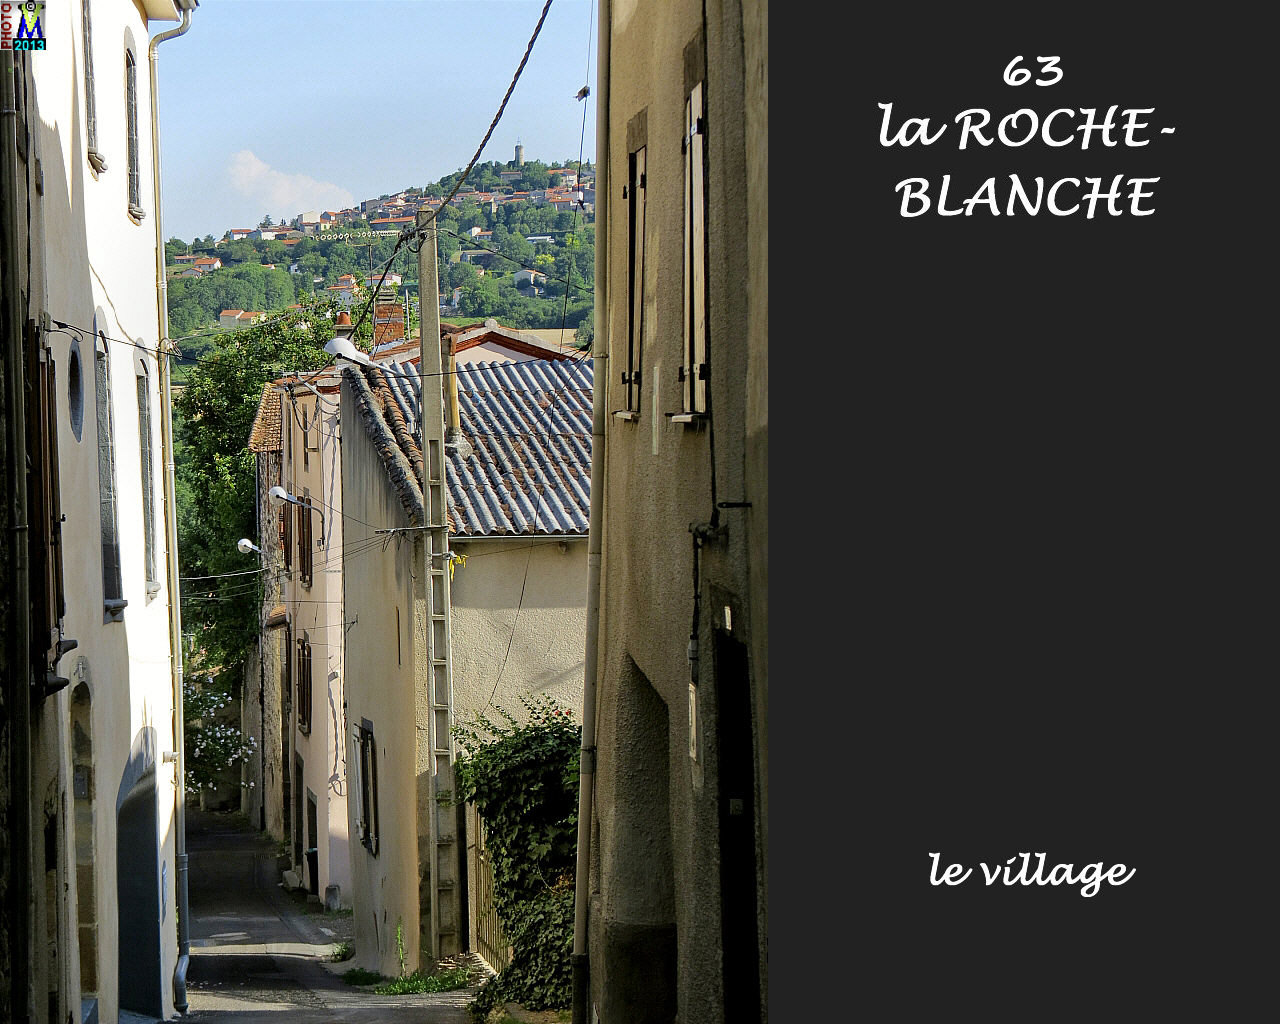 63ROCHE-BLANCHE_village_108.jpg